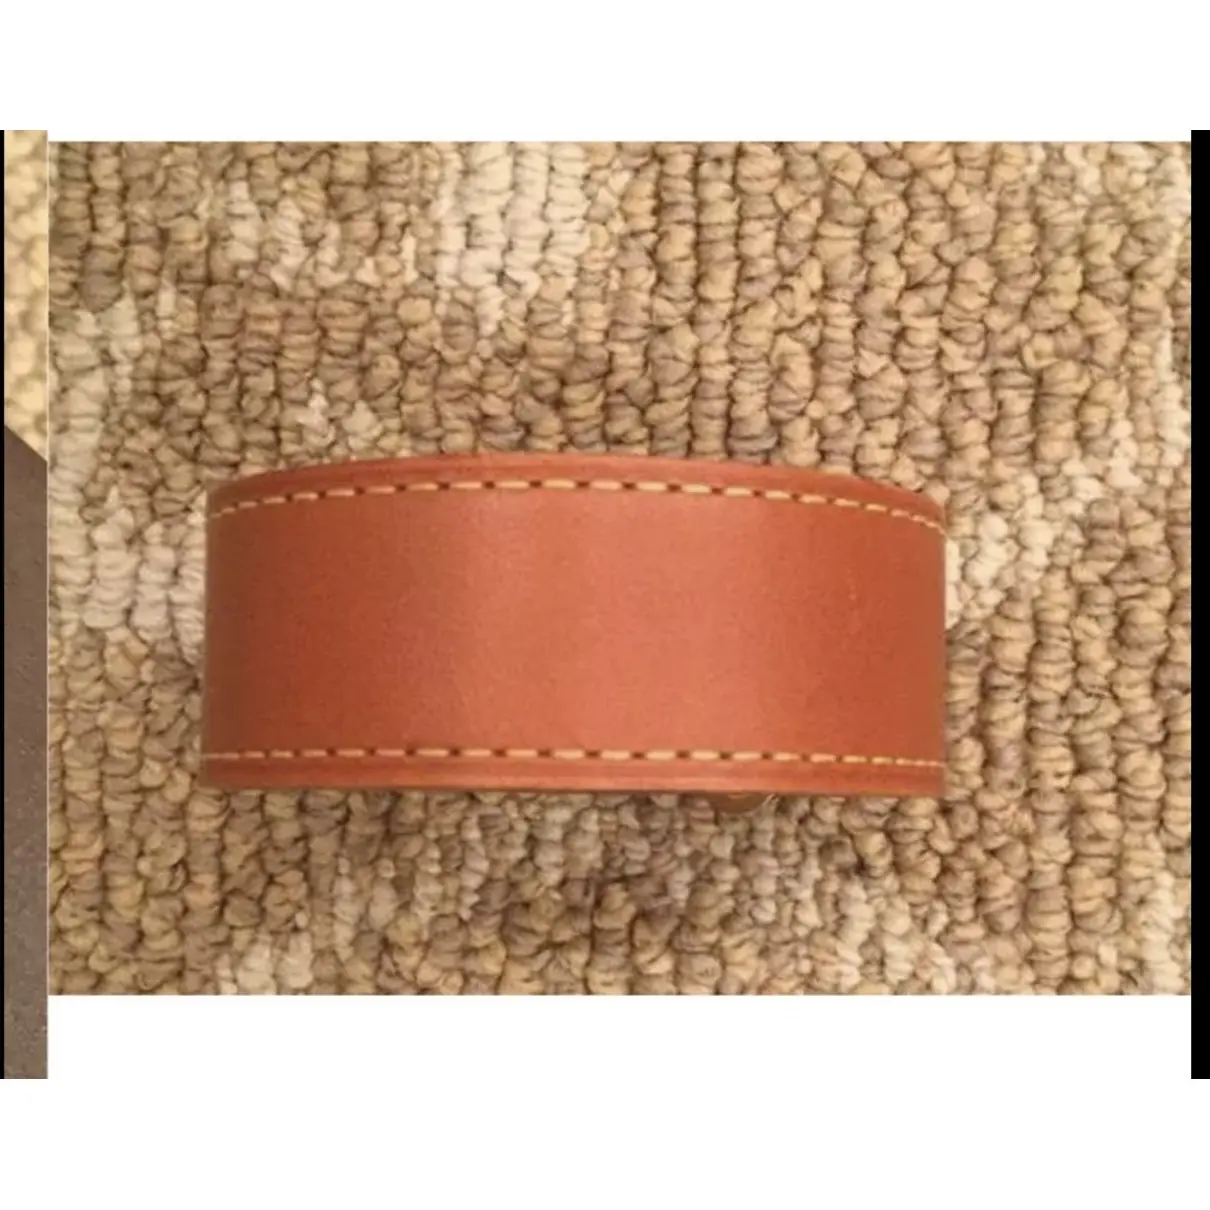 Buy Louis Vuitton Leather bracelet online